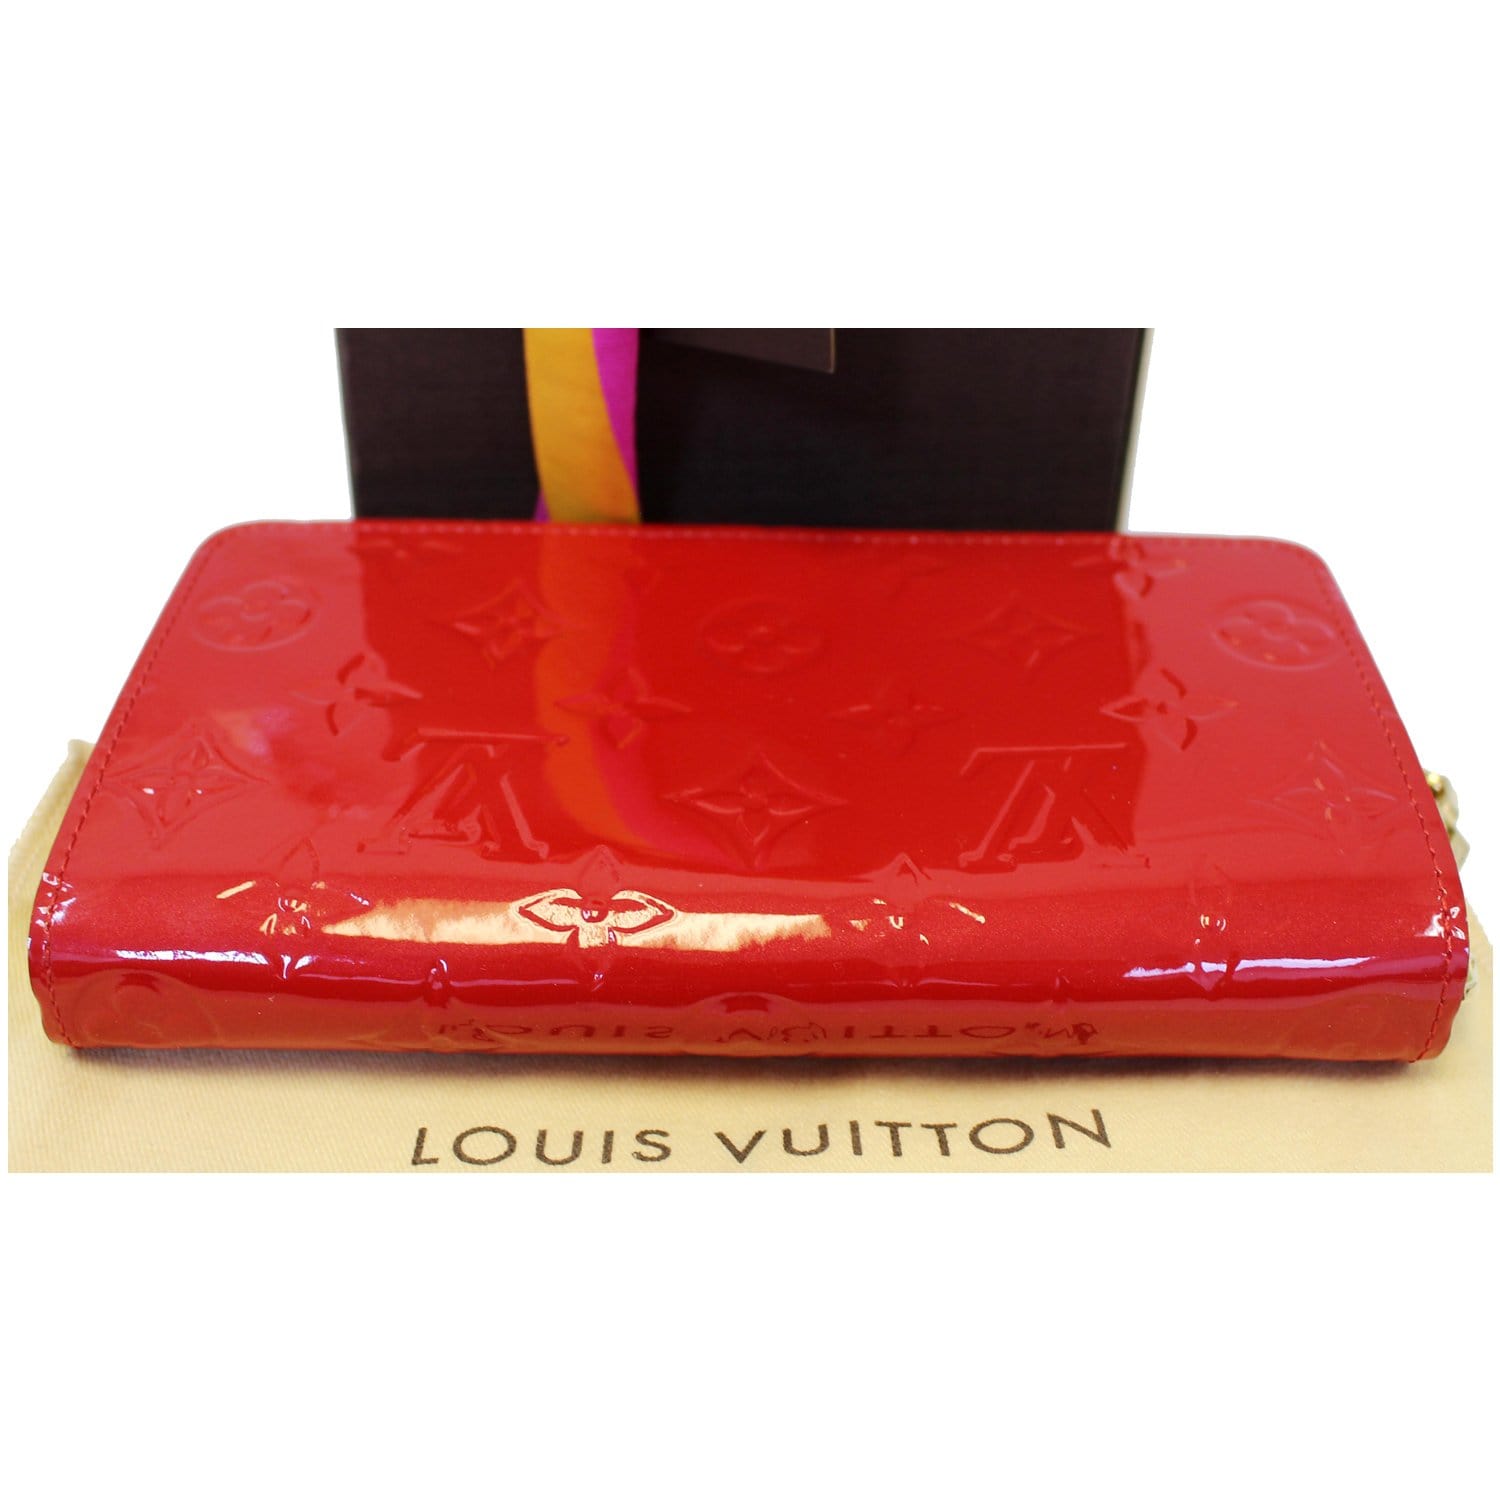 Authentic Louis Vuitton purple Vernis Sarah Chain wallet, Luxury